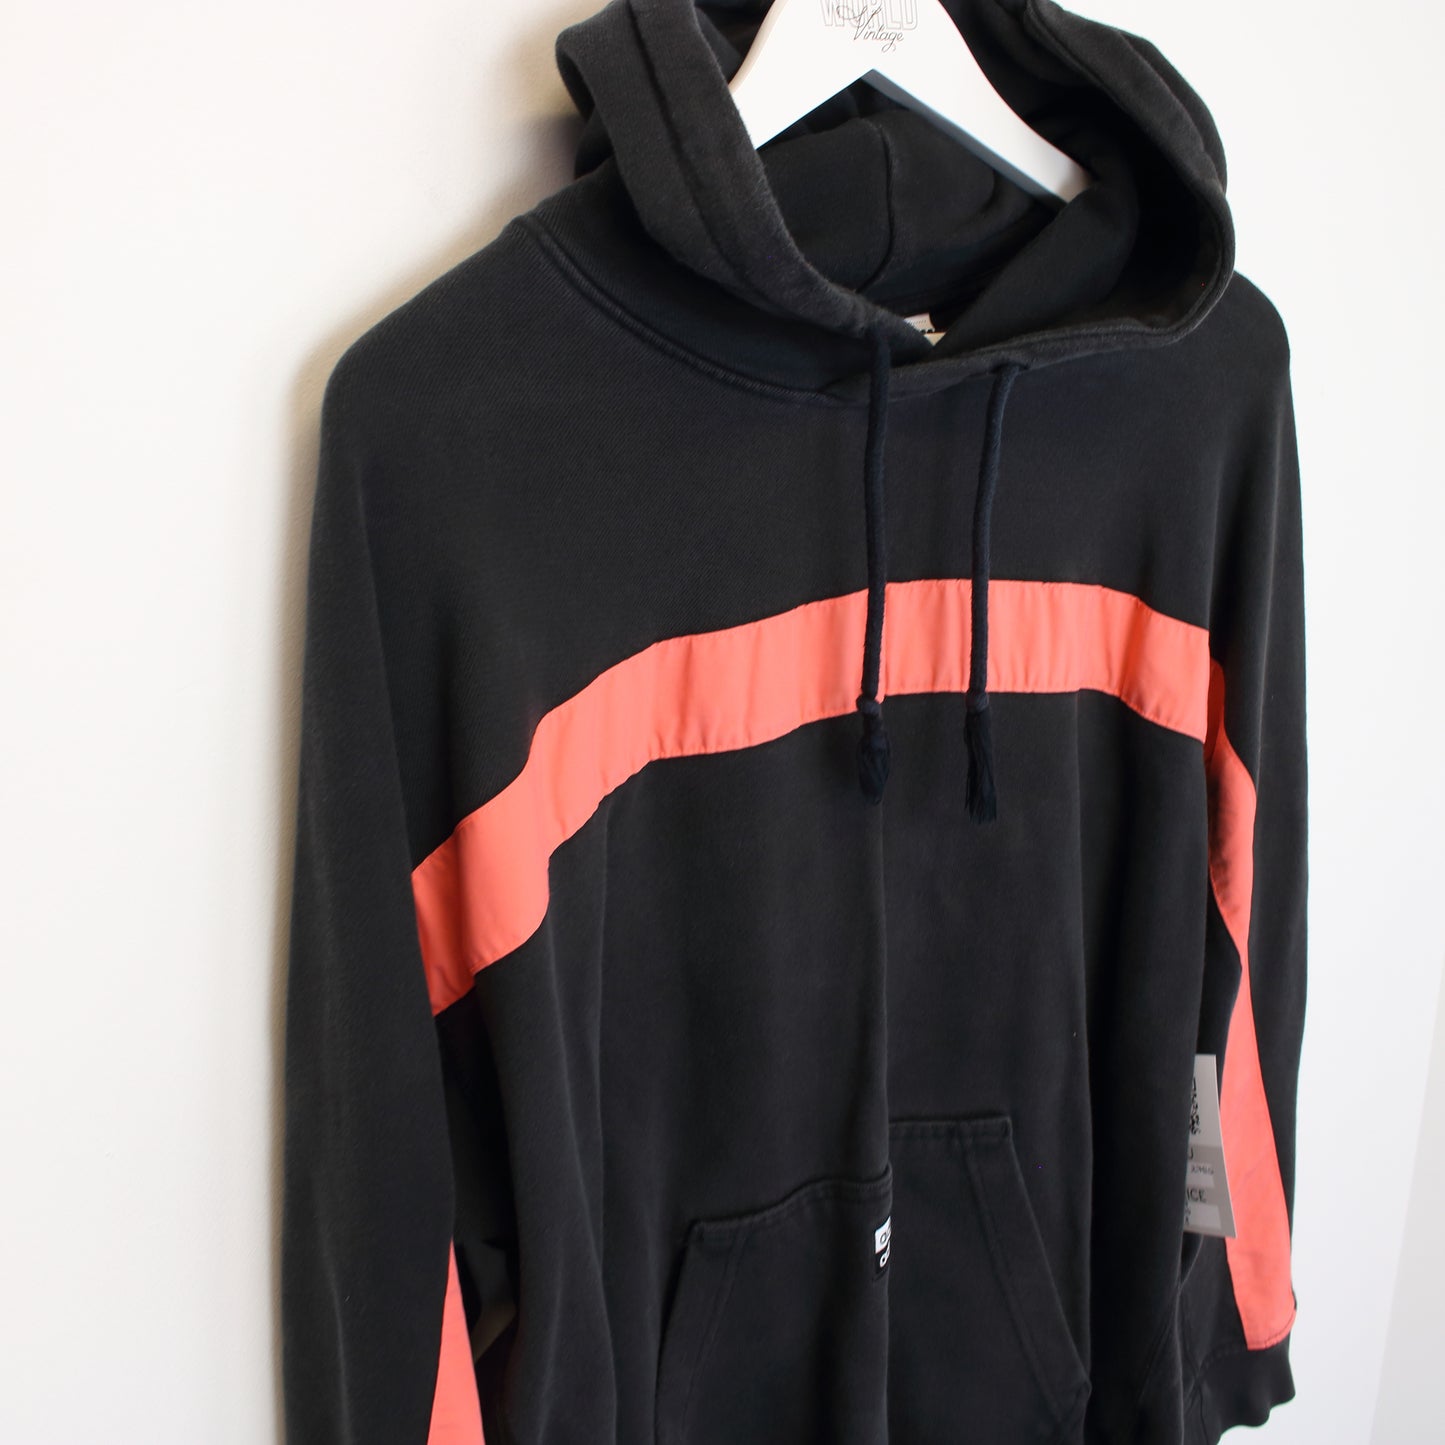 Vintage Adidas hoodie in black and pink. Best fits M